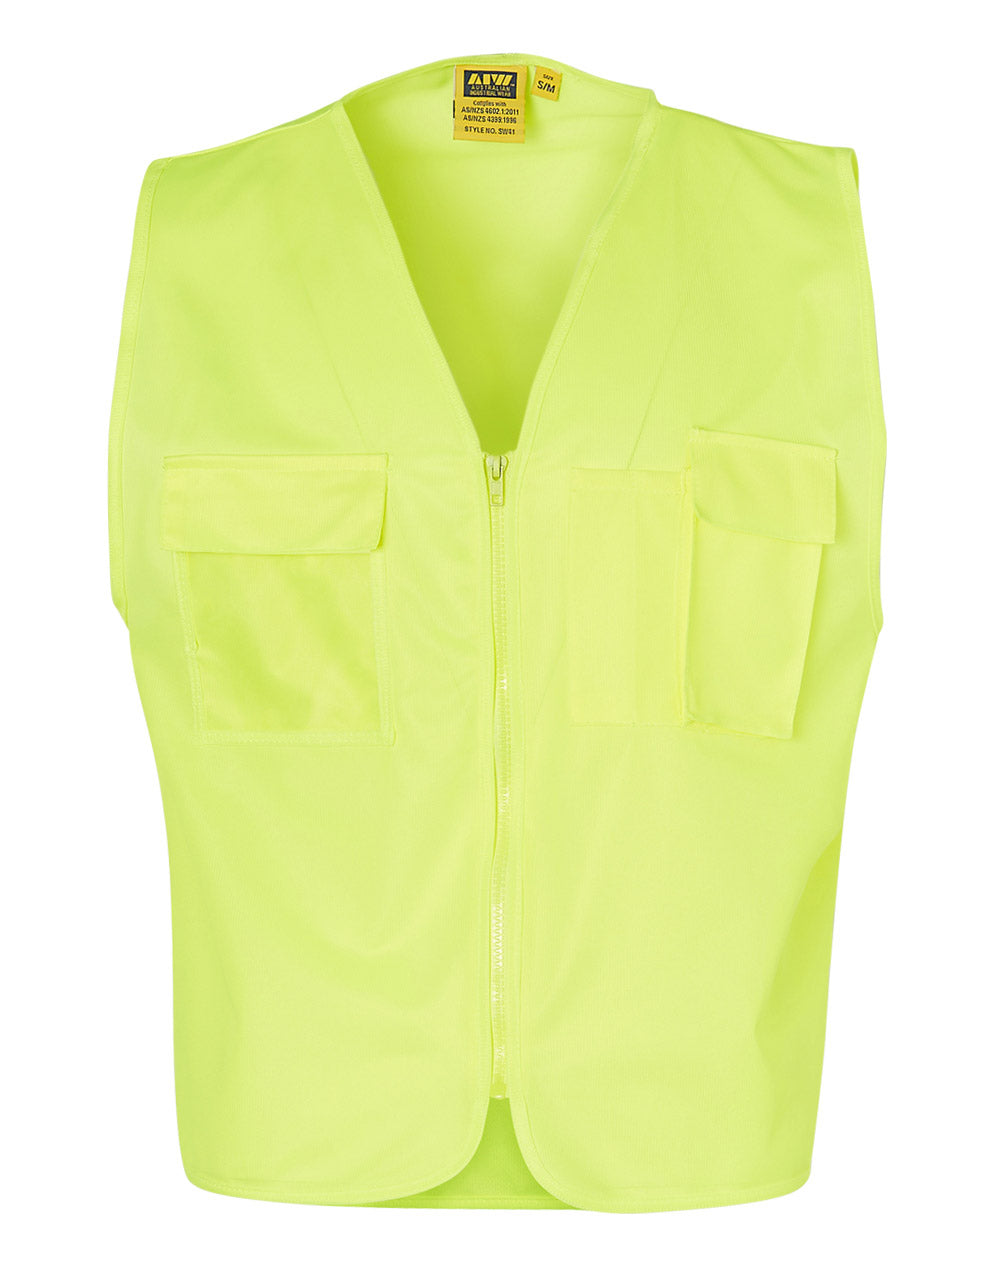 Hi-Vis Safety Vest with Pockets - SW41